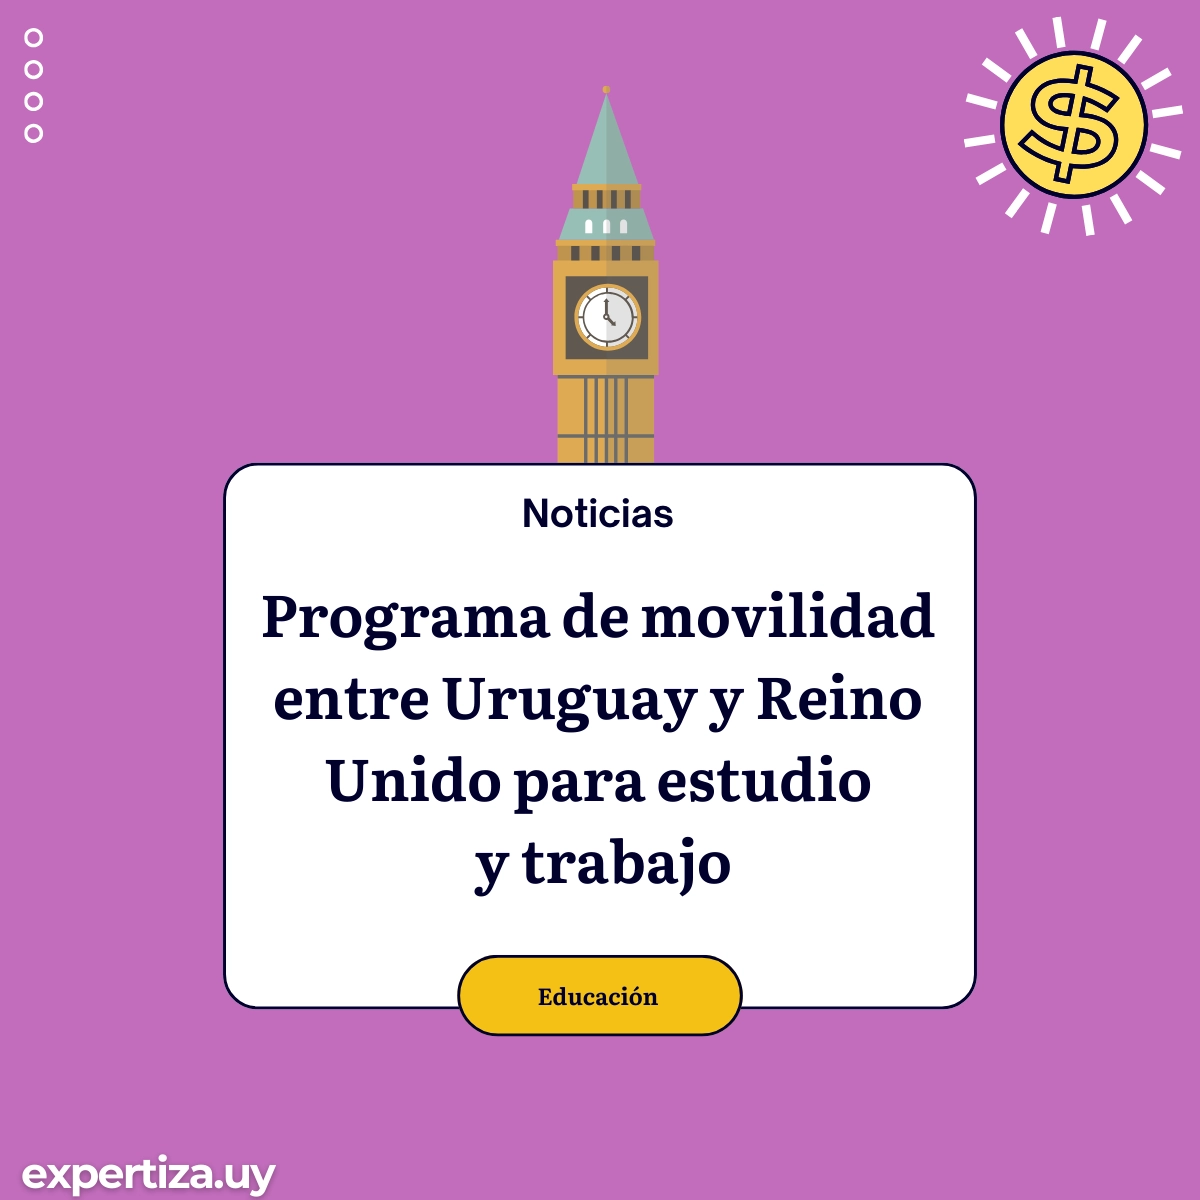 Programa de movilidad entre Uruguay y Reino Unido para estudio y trabajo.